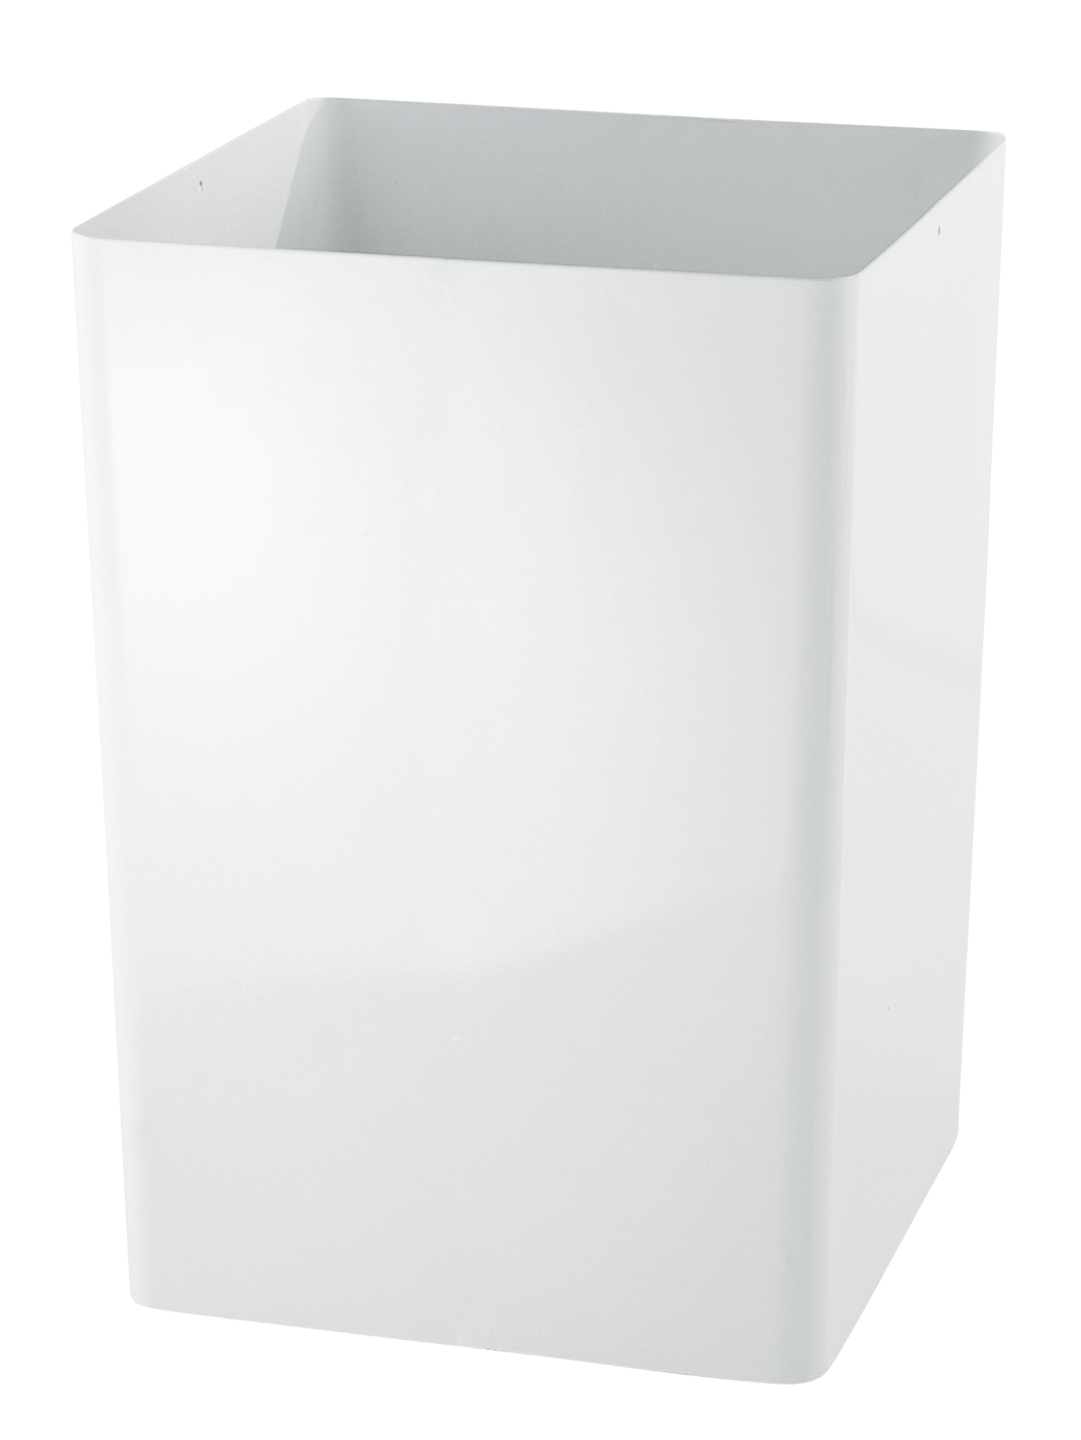 RUCK - Papierkorb in weiß